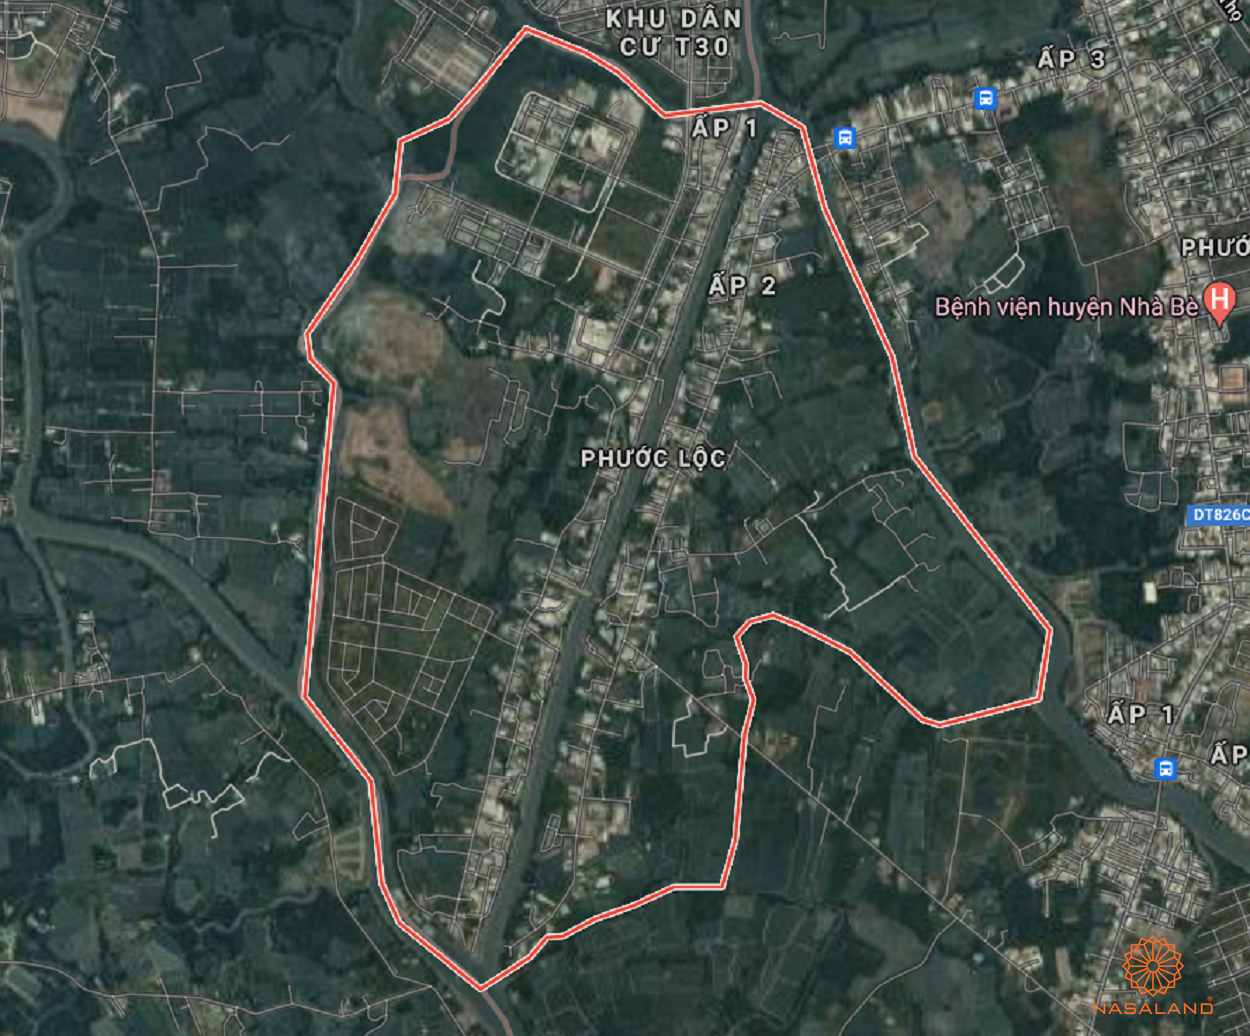 Quy hoạch sử dụng đất Xã Phước Lộc Huyện Nhà Bè thể hiện trên bản đồ quy hoạch phân khu tỷ lệ 1/2000 của TP. HCM